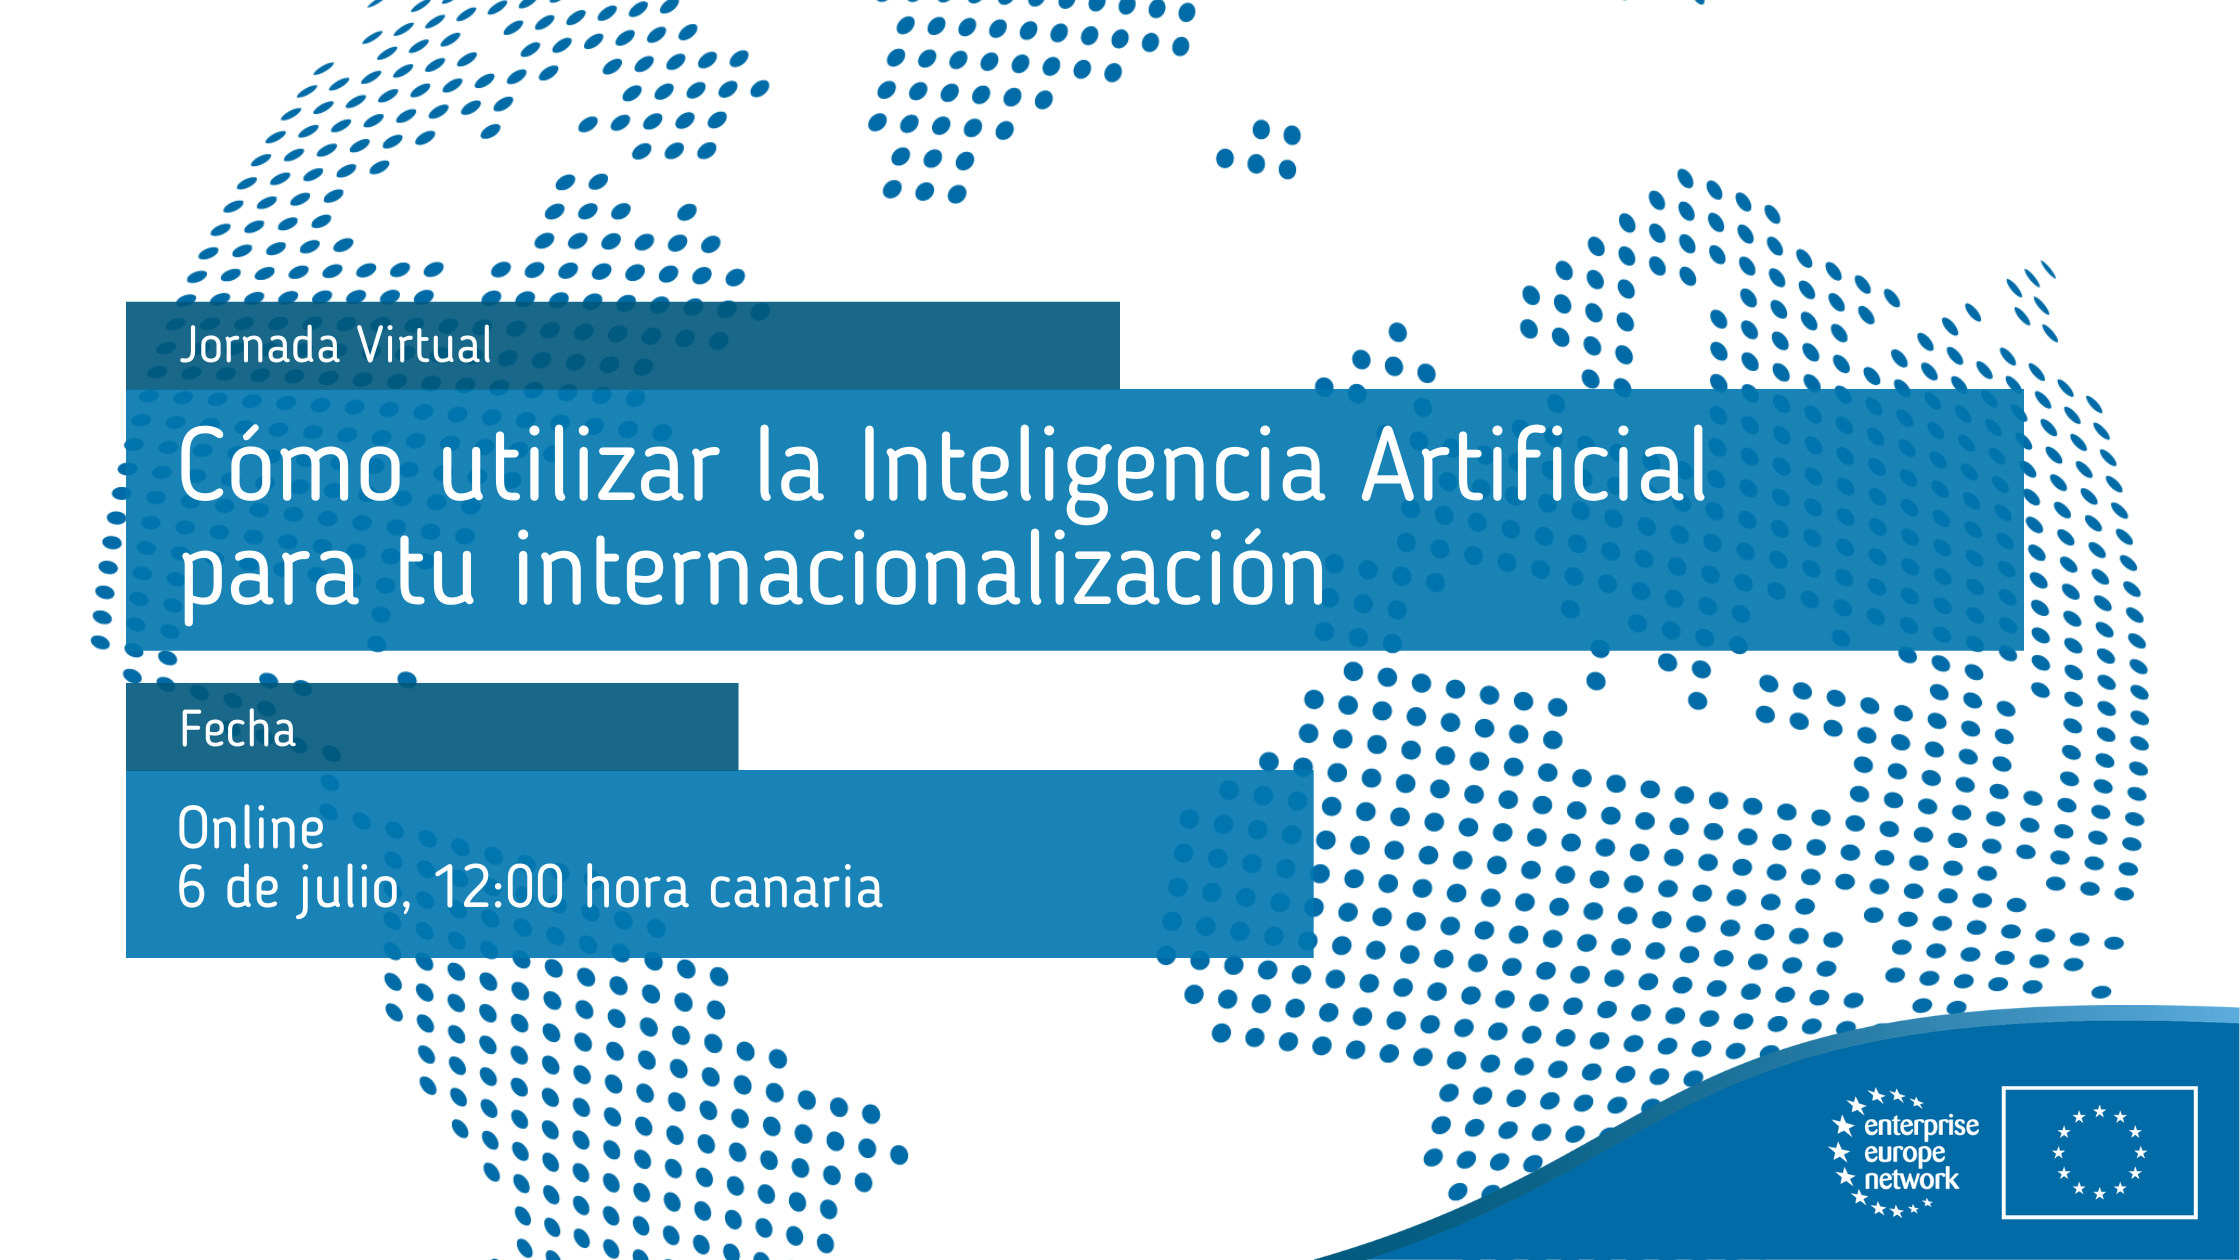 Jornada_Virtual_Cómo_utilizar_la_Inteligencia_Artificial_para_tu_internacionalización